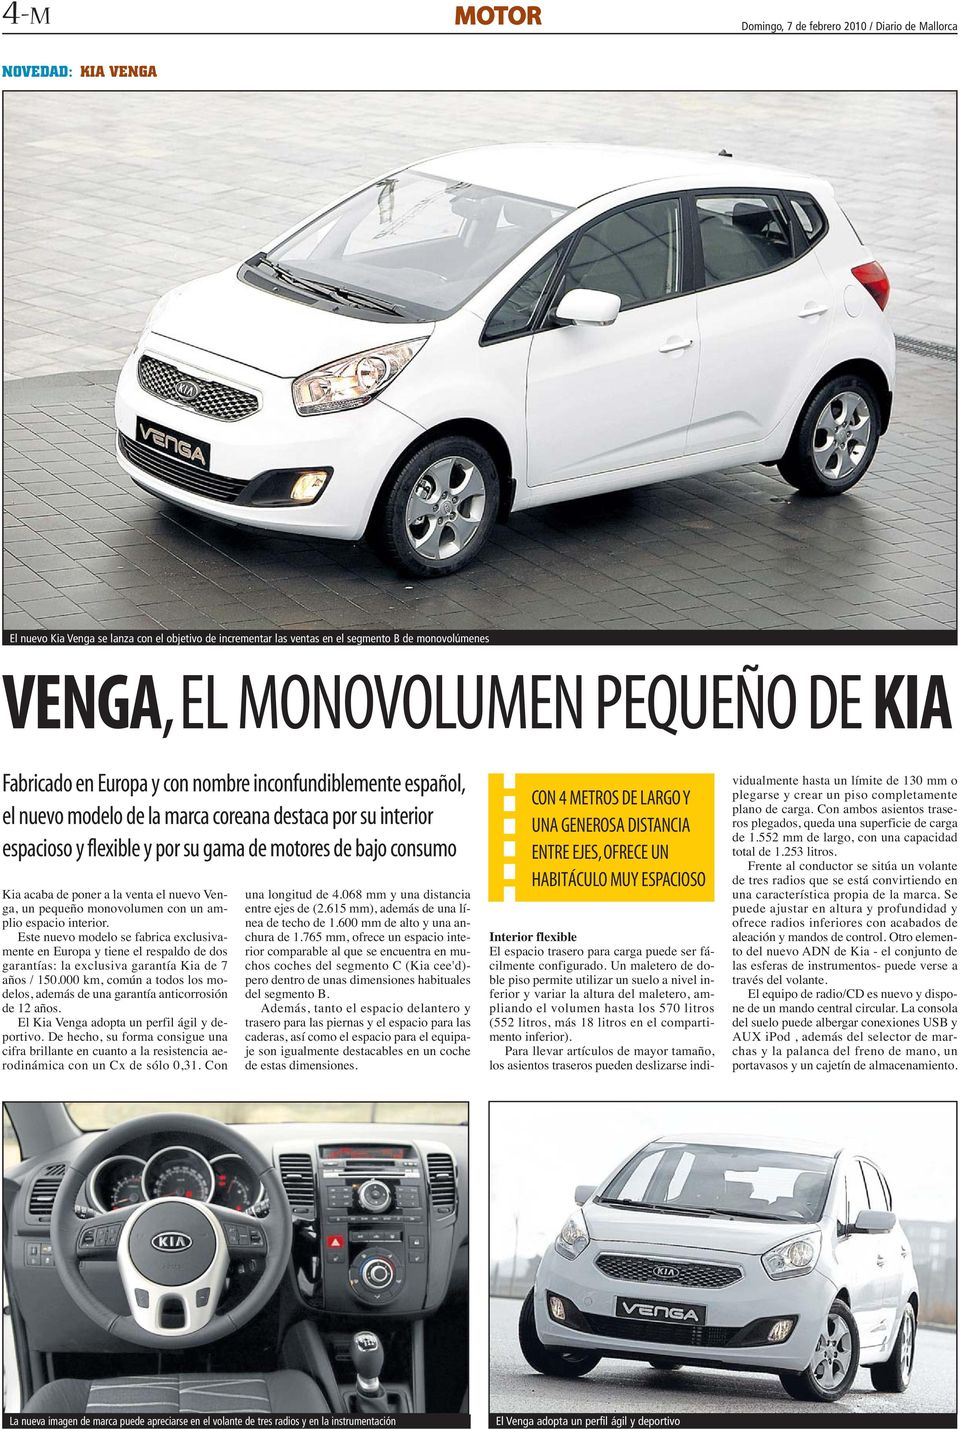 bajo consumo Kia acaba de poner a la venta el nuevo Venga, un pequeño monovolumen con un amplio espacio interior.